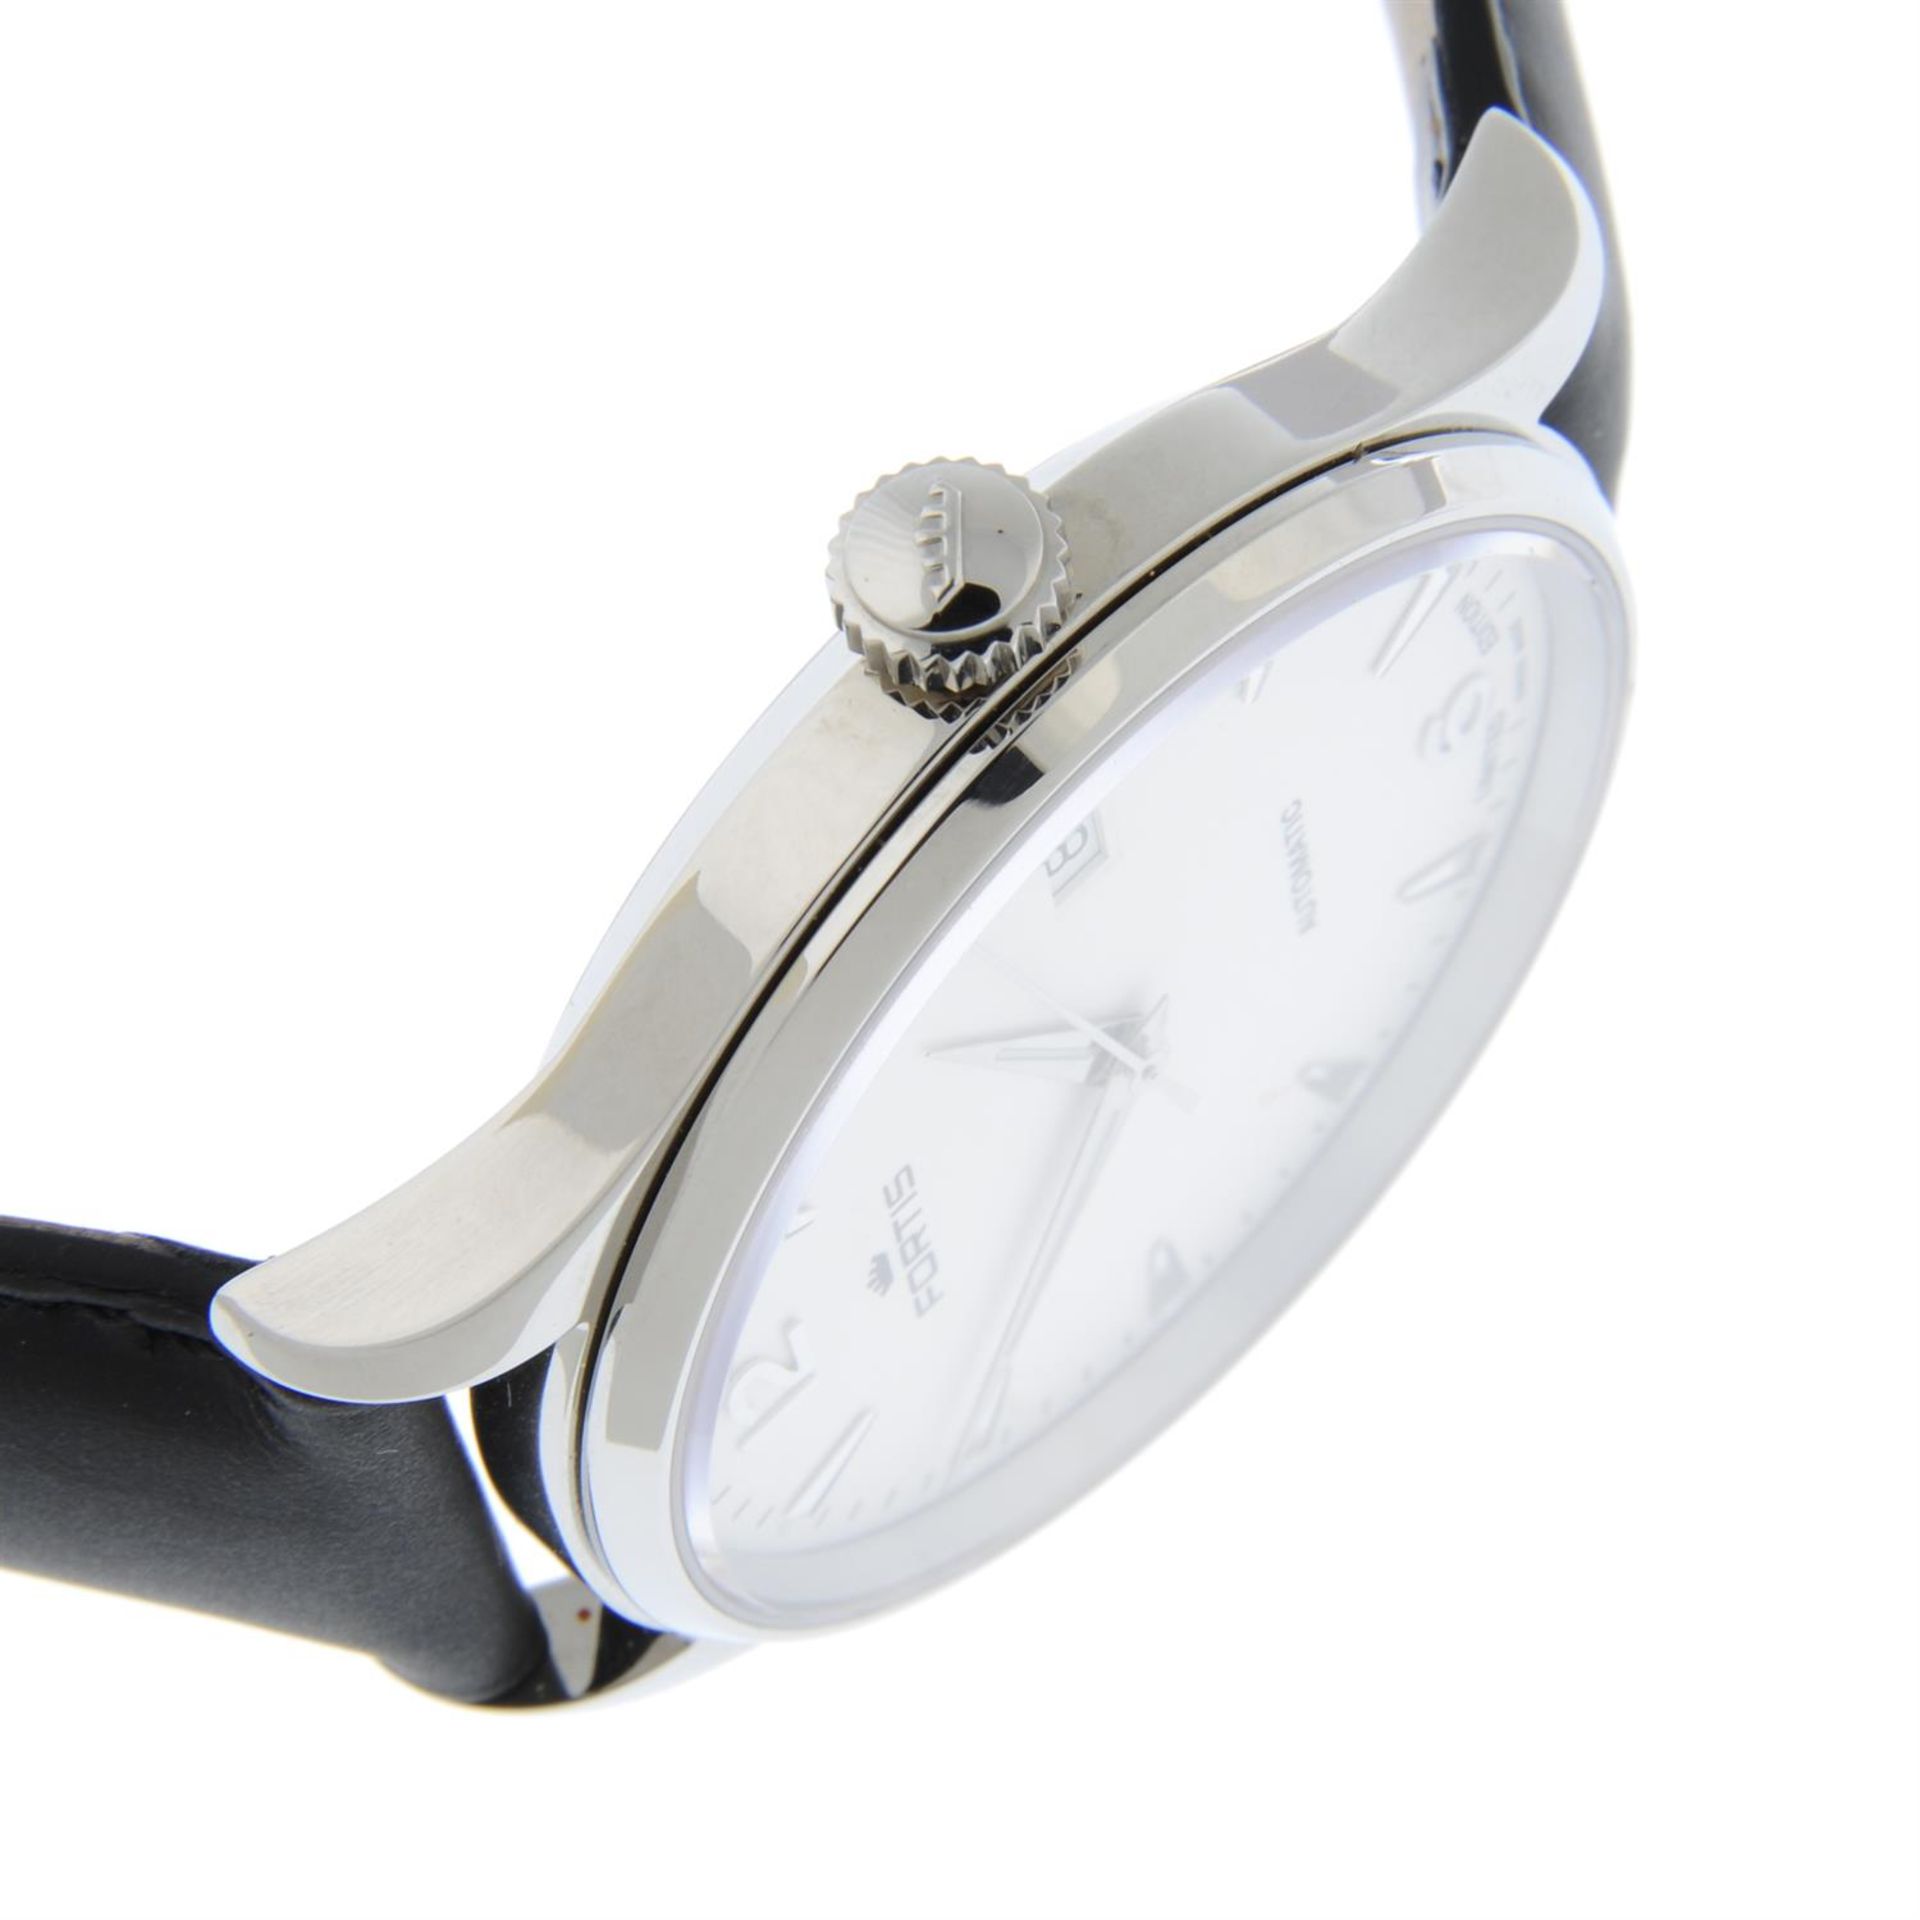 FORTIS - a limited edition stainless steel Terrestis Founder wrist watch, 40mm. - Bild 4 aus 4